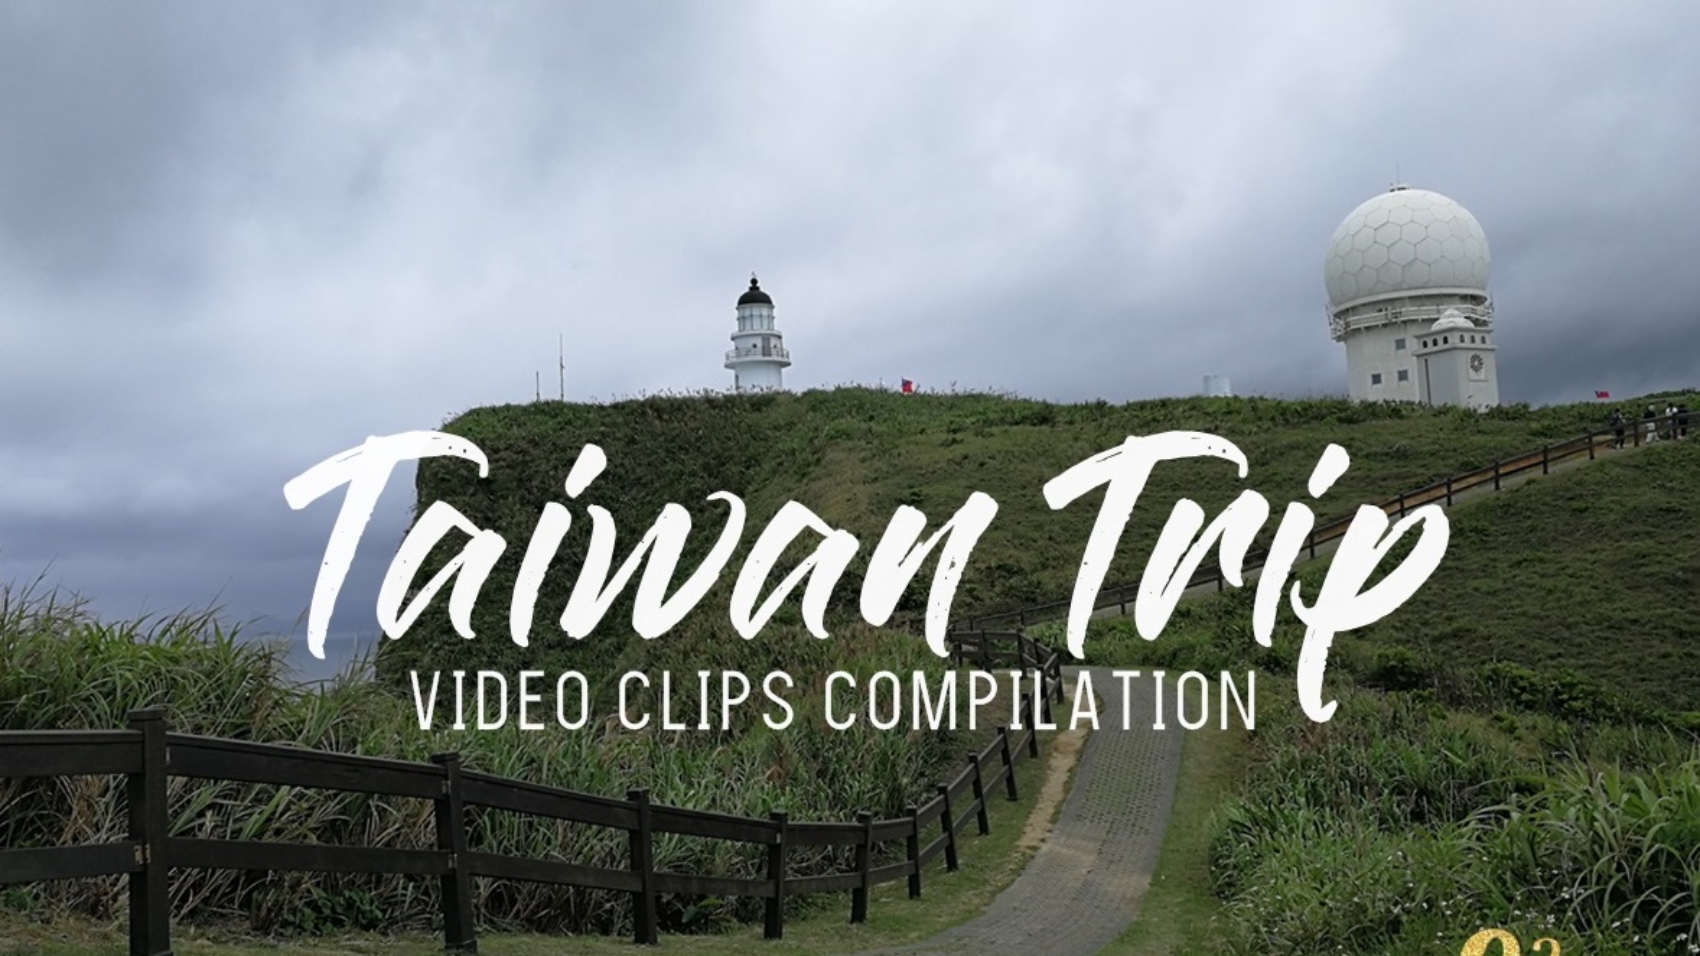 taiwan trip, taiwan videos, taiwan destination